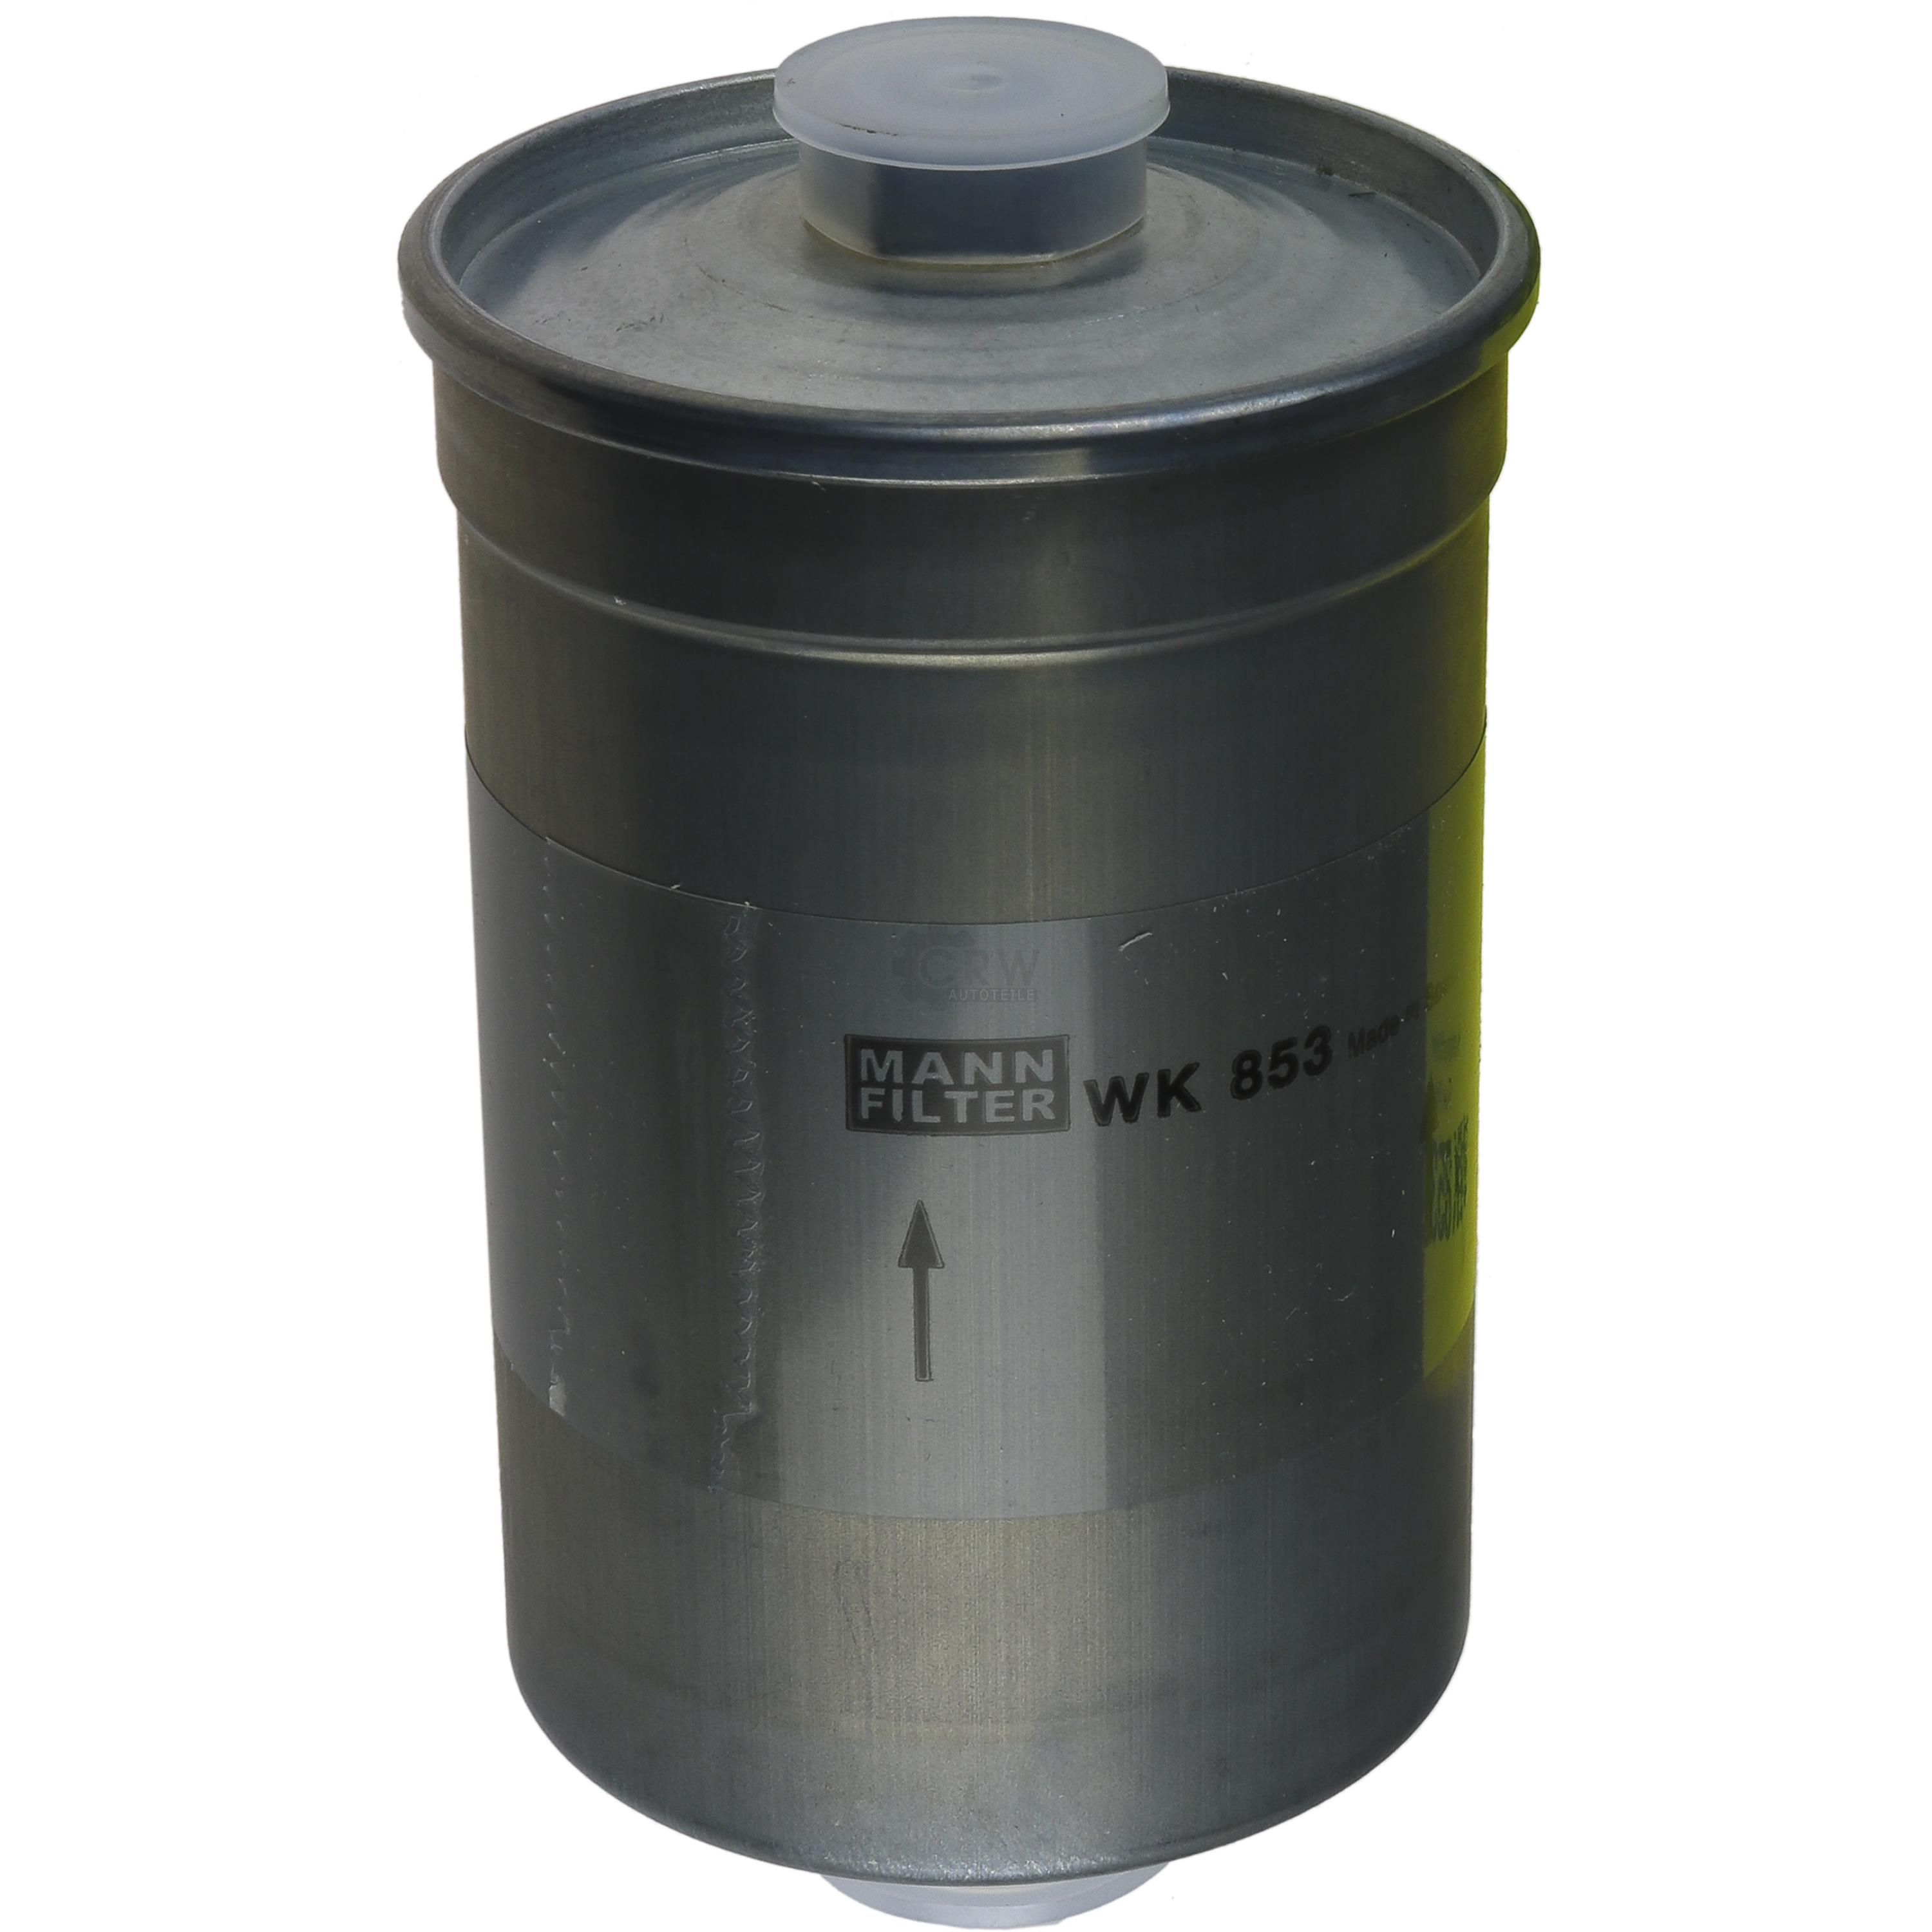 MANN-FILTER Kraftstofffilter WK 853 Fuel Filter